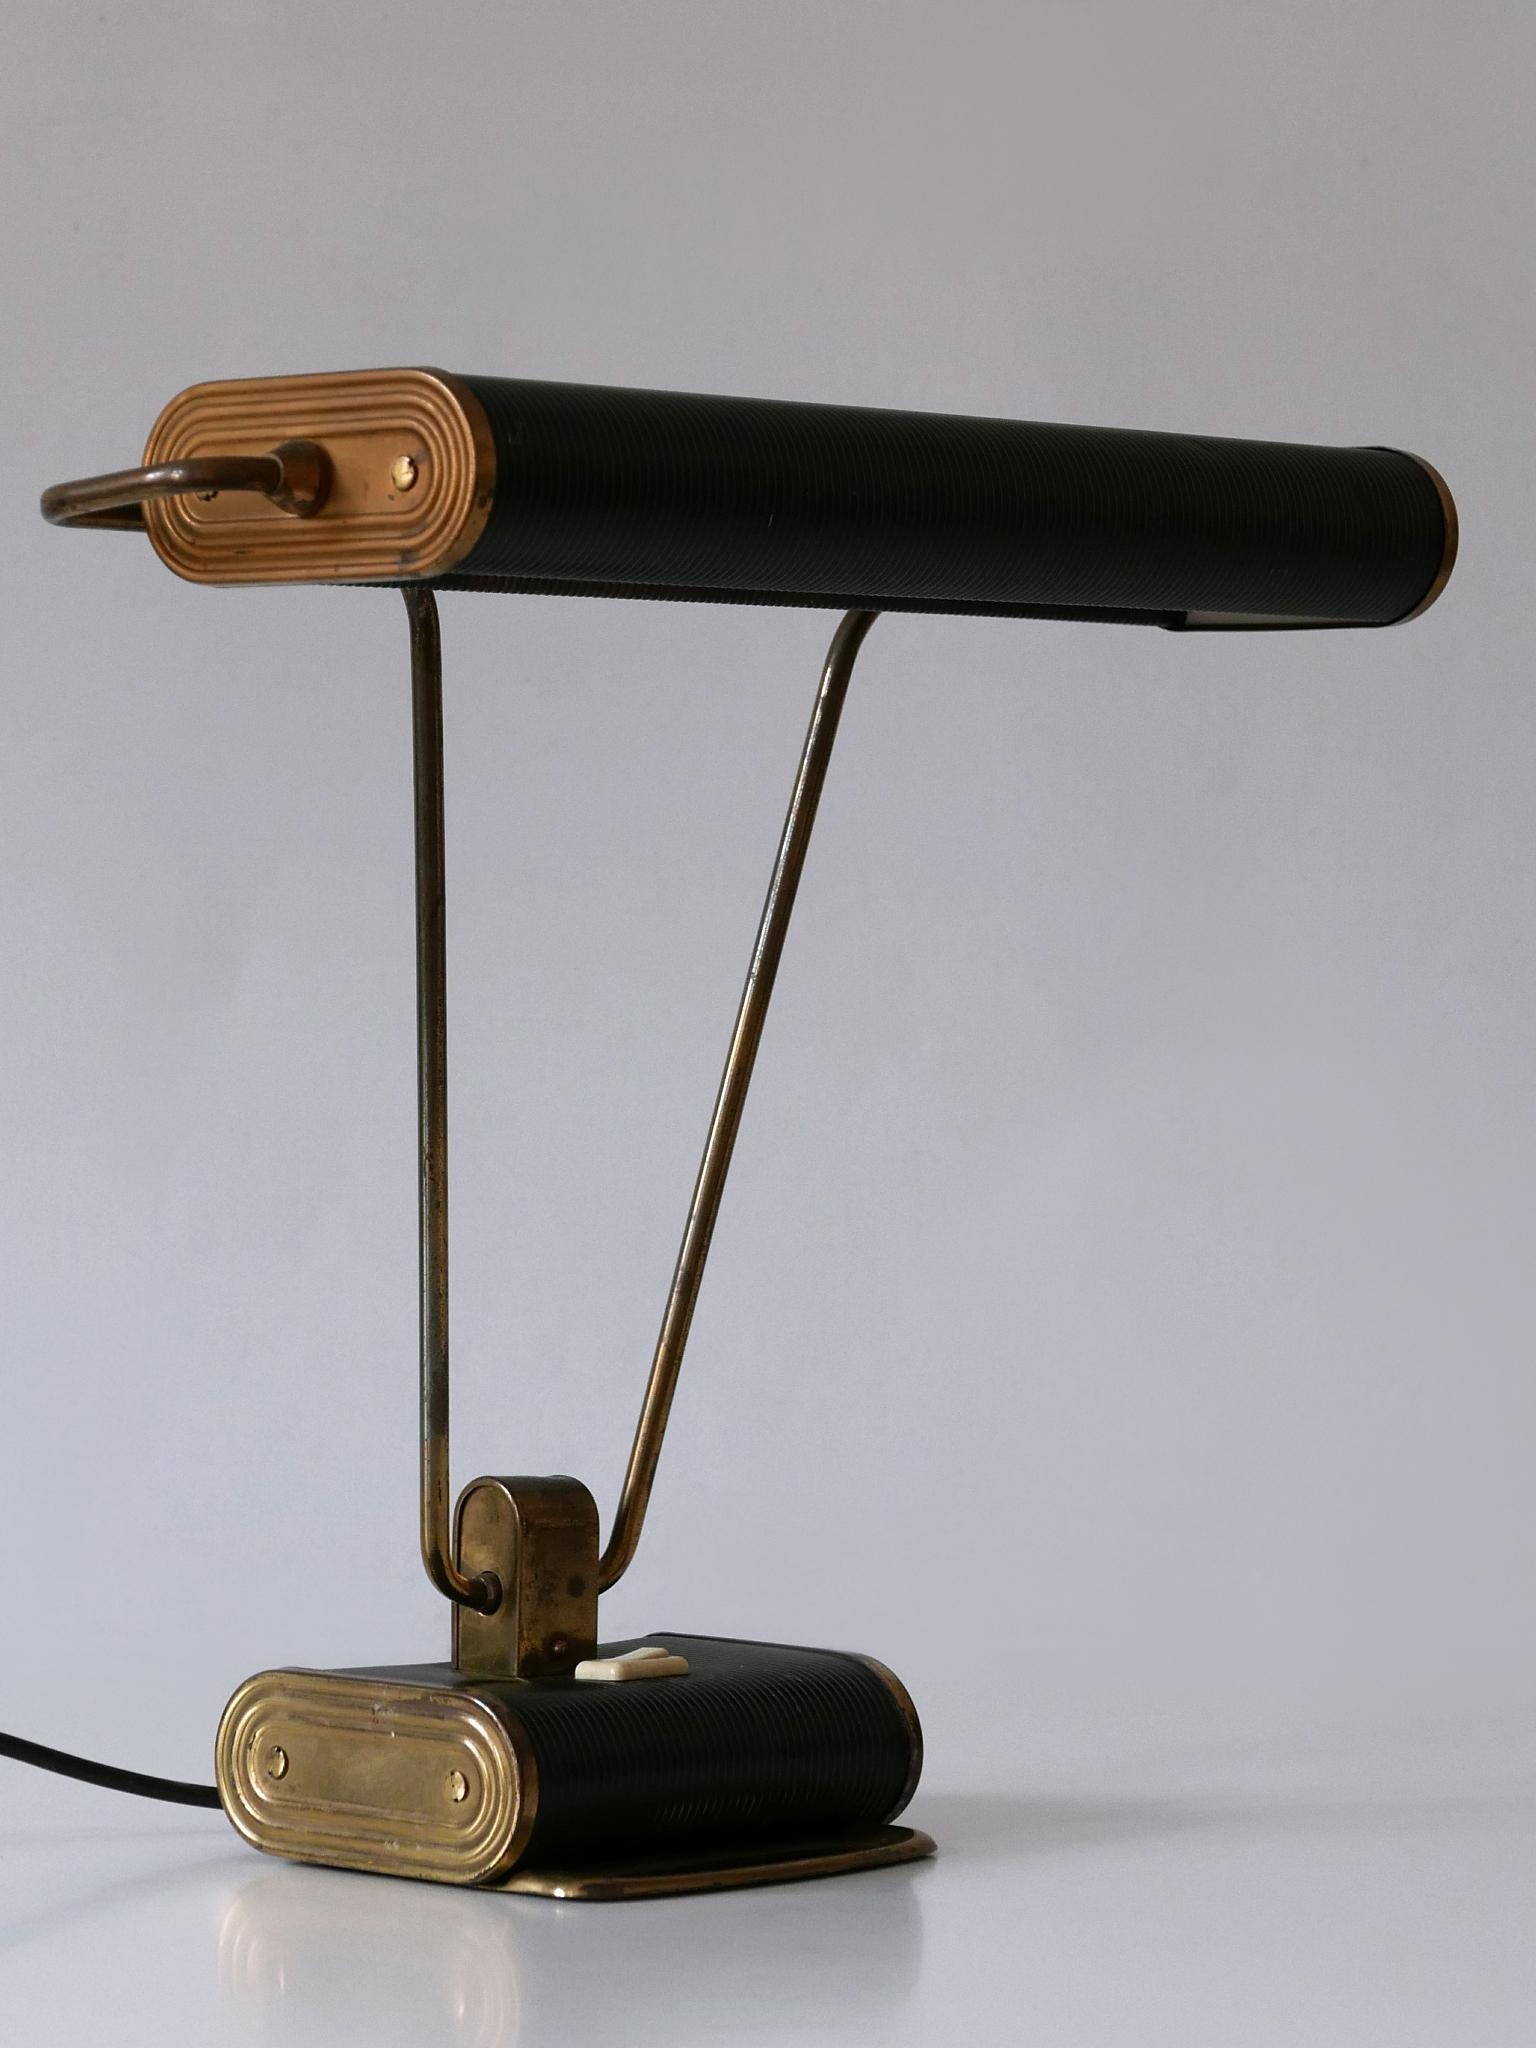 Elégante lampe de table ou de bureau Art Deco 'No 71'. Abat-jour rotatif. Conçu par André Mounique pour Jumo, France, années 1930.

Un total de 5 lampes en deux couleurs est disponible !
Il s'agit du numéro 3 des cinq lampes de bureau. Les images